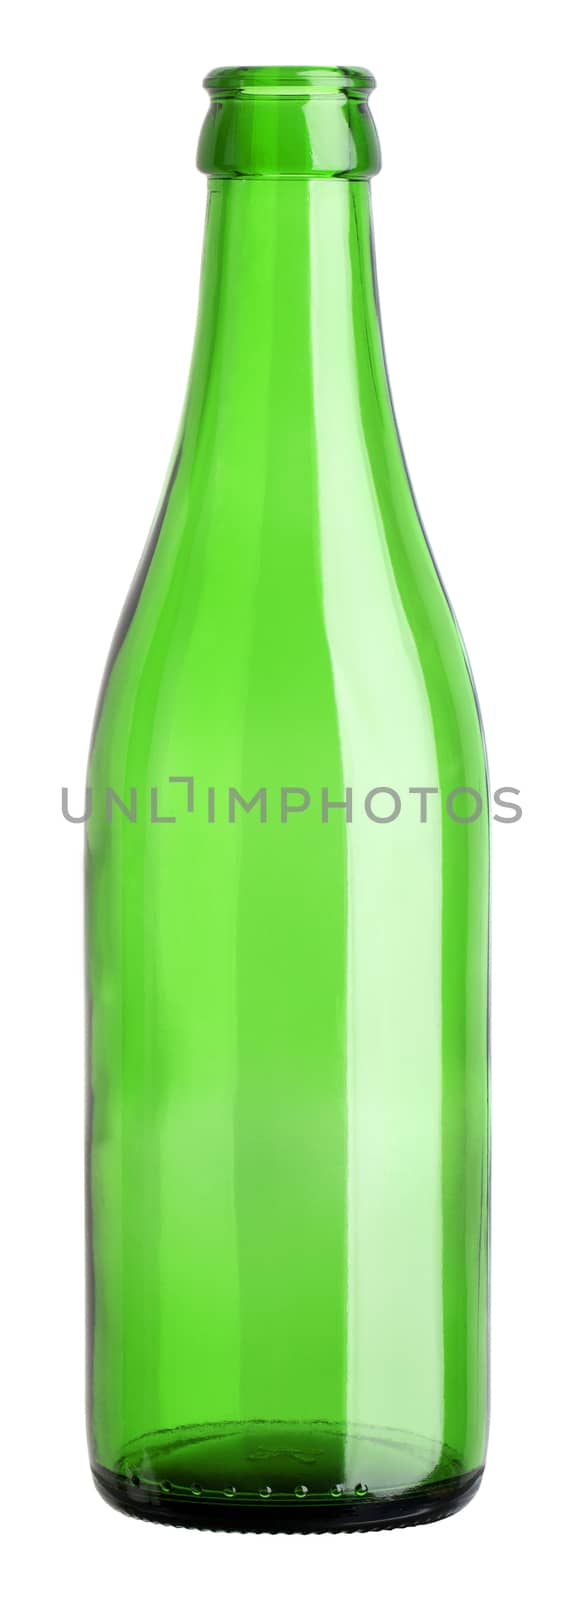 empty green bottle by Digifoodstock